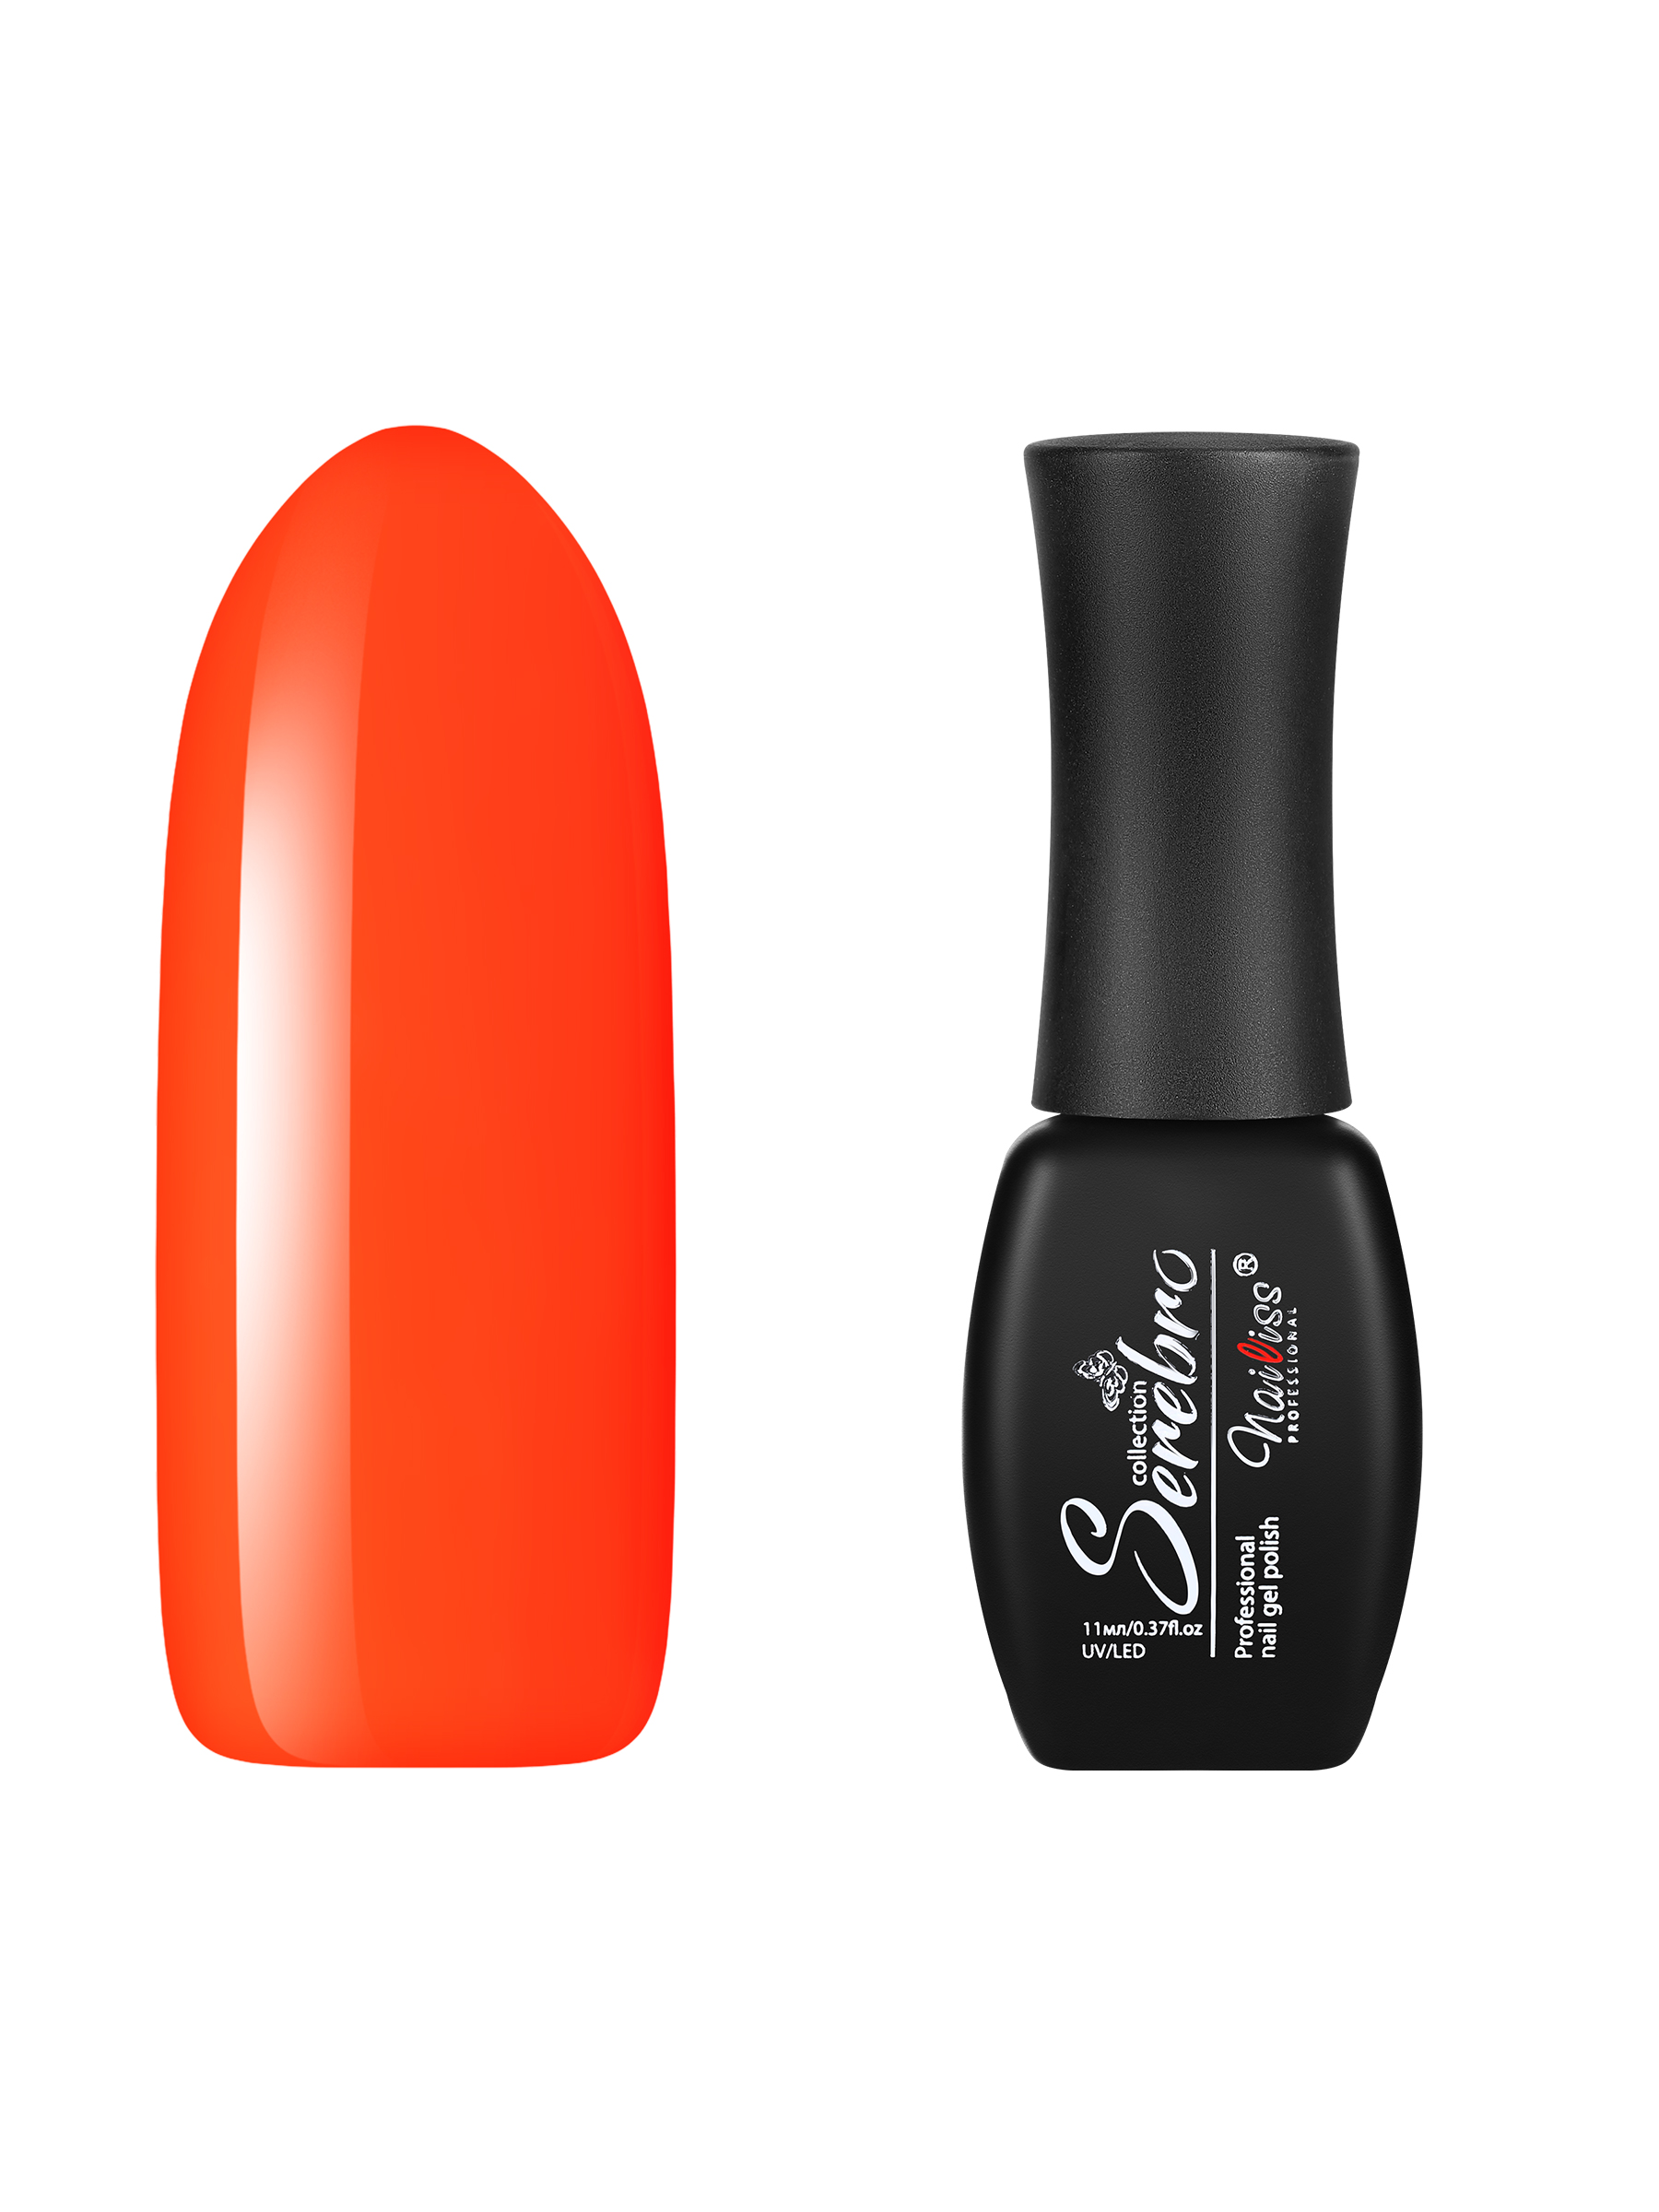 Гель-лак для ногтей Serebro, плотный цветной гипоаллергенный, насыщенный оранжевый, 11 мл ошейник дарэлл простой стандарт 1 слой безразмерный кожаный 20 ммх44 см оранжевый